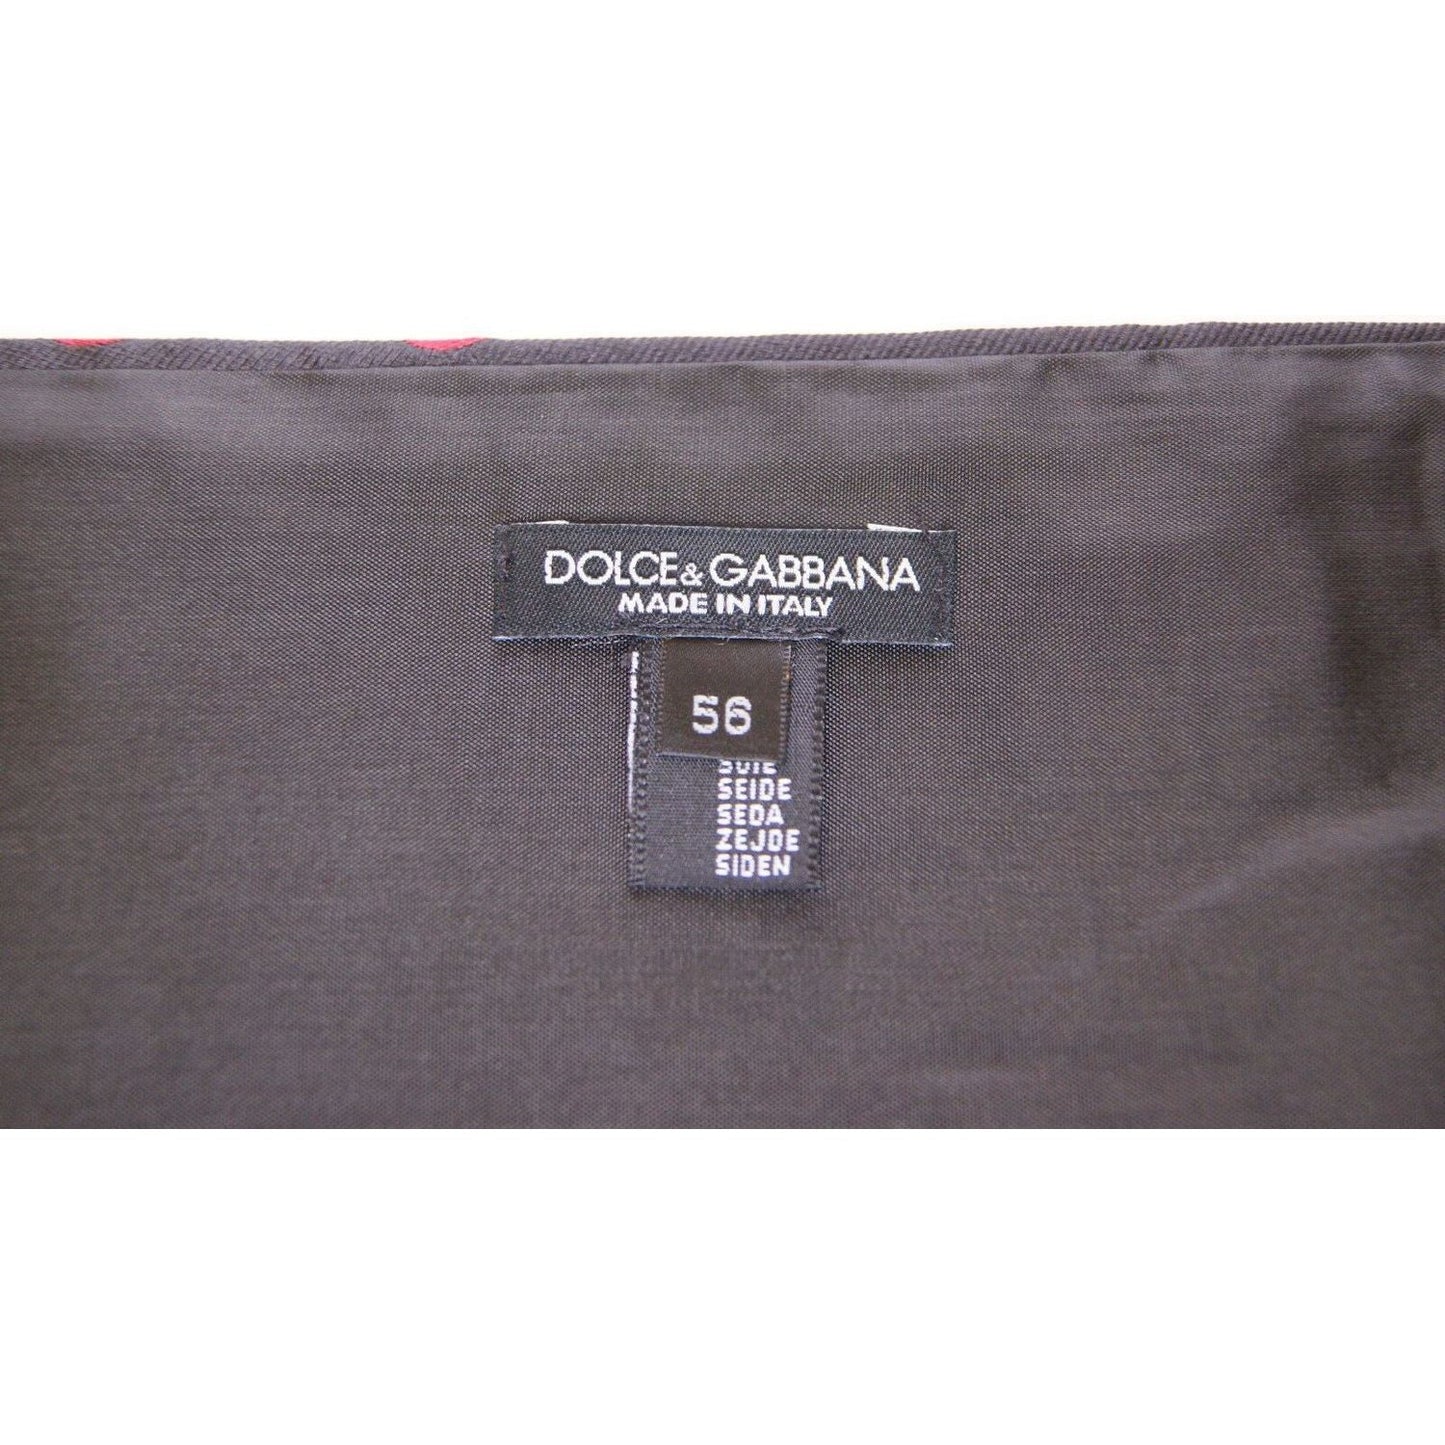 Dolce & GabbanaExquisite Black Silk Cummerbund with Red Polka DotsMcRichard Designer Brands£209.00